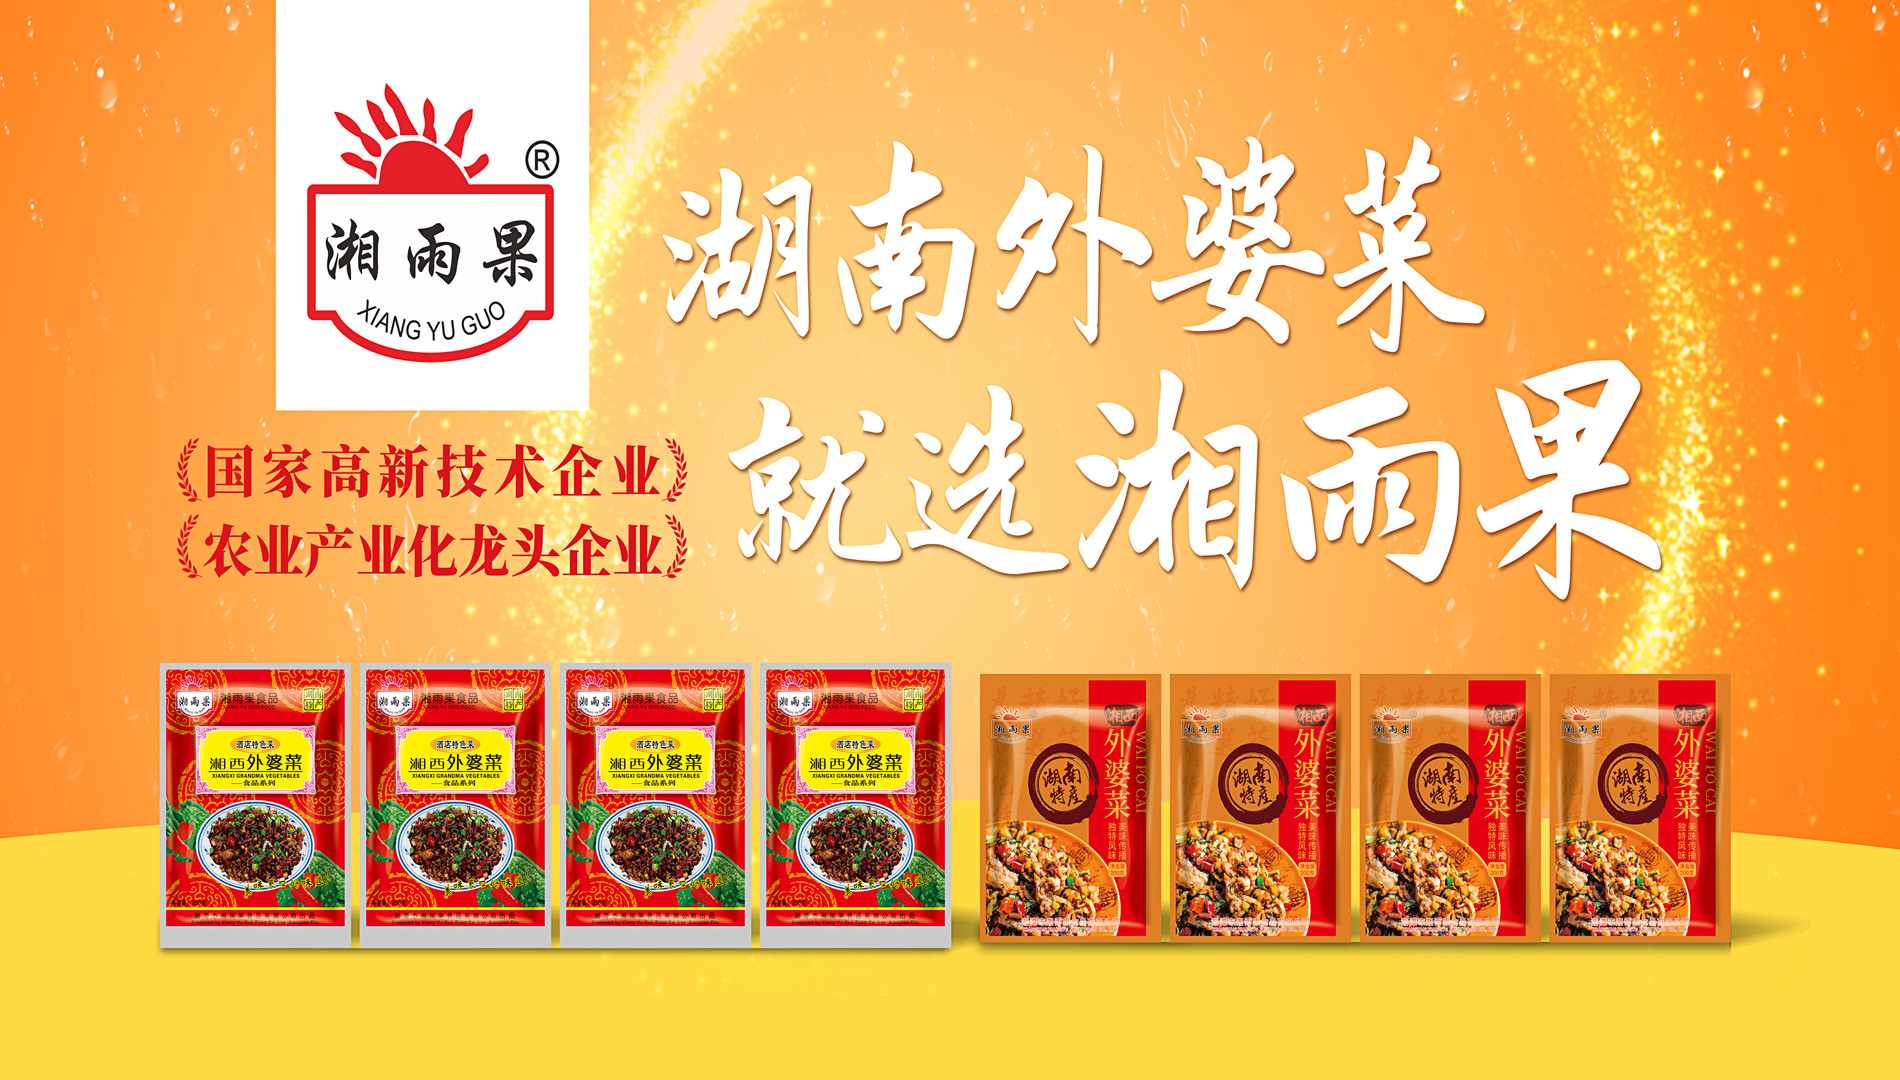 Xiang Yu Guo Food – primerjalno podjetje v industriji vnaprej pripravljenih jedi